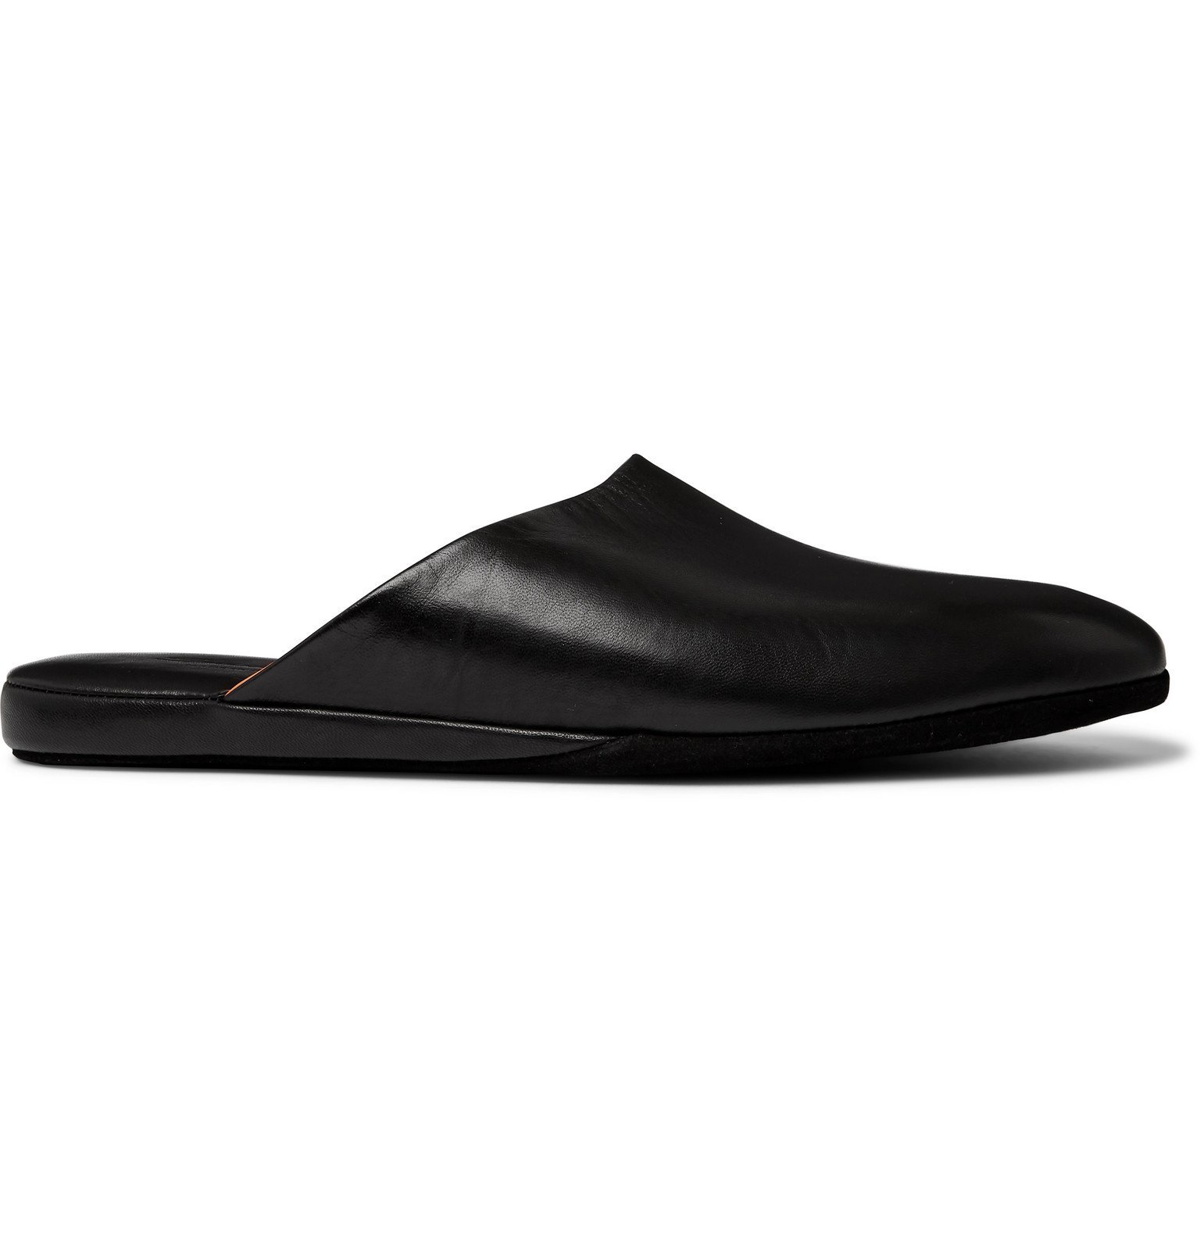 Santoni - Leather Slippers Black Santoni